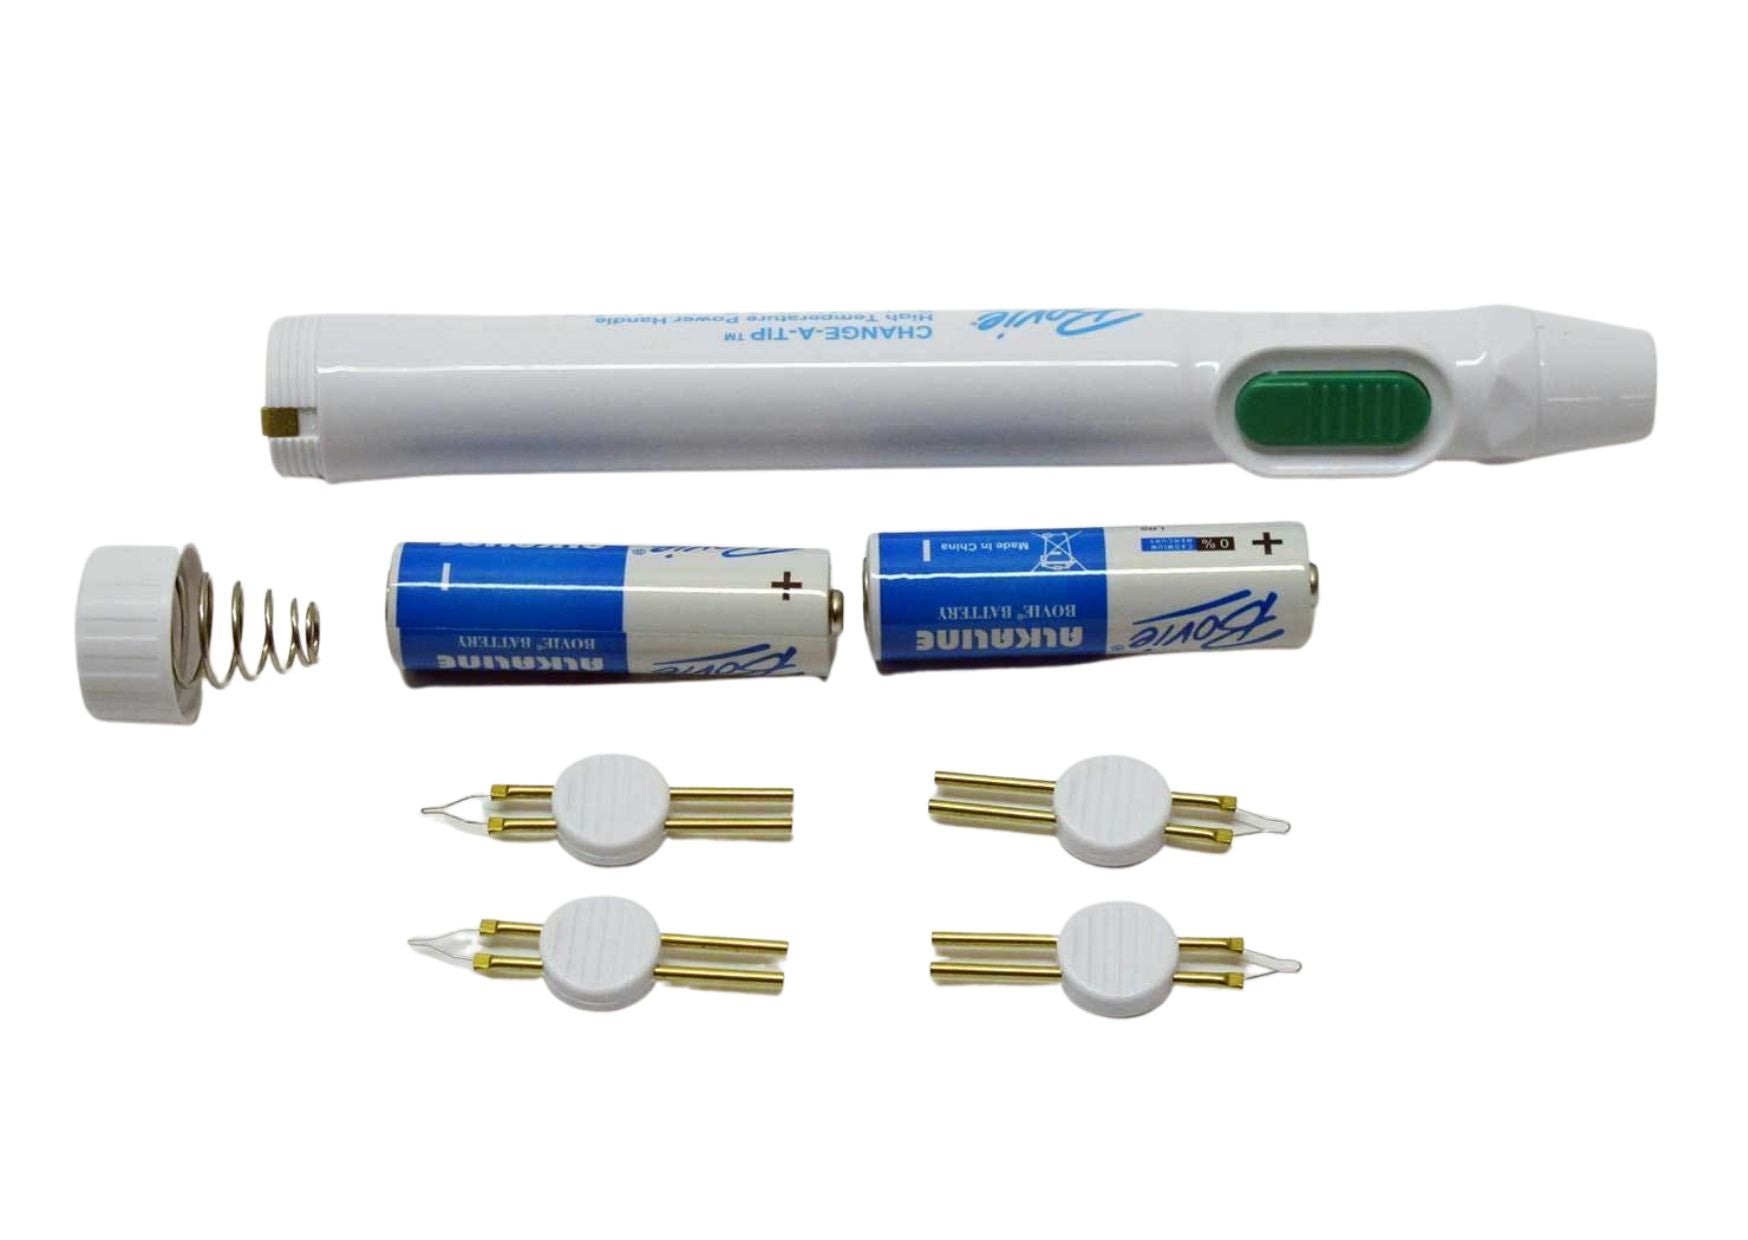 High-temperature battery cautery set, standard, 2 batteries